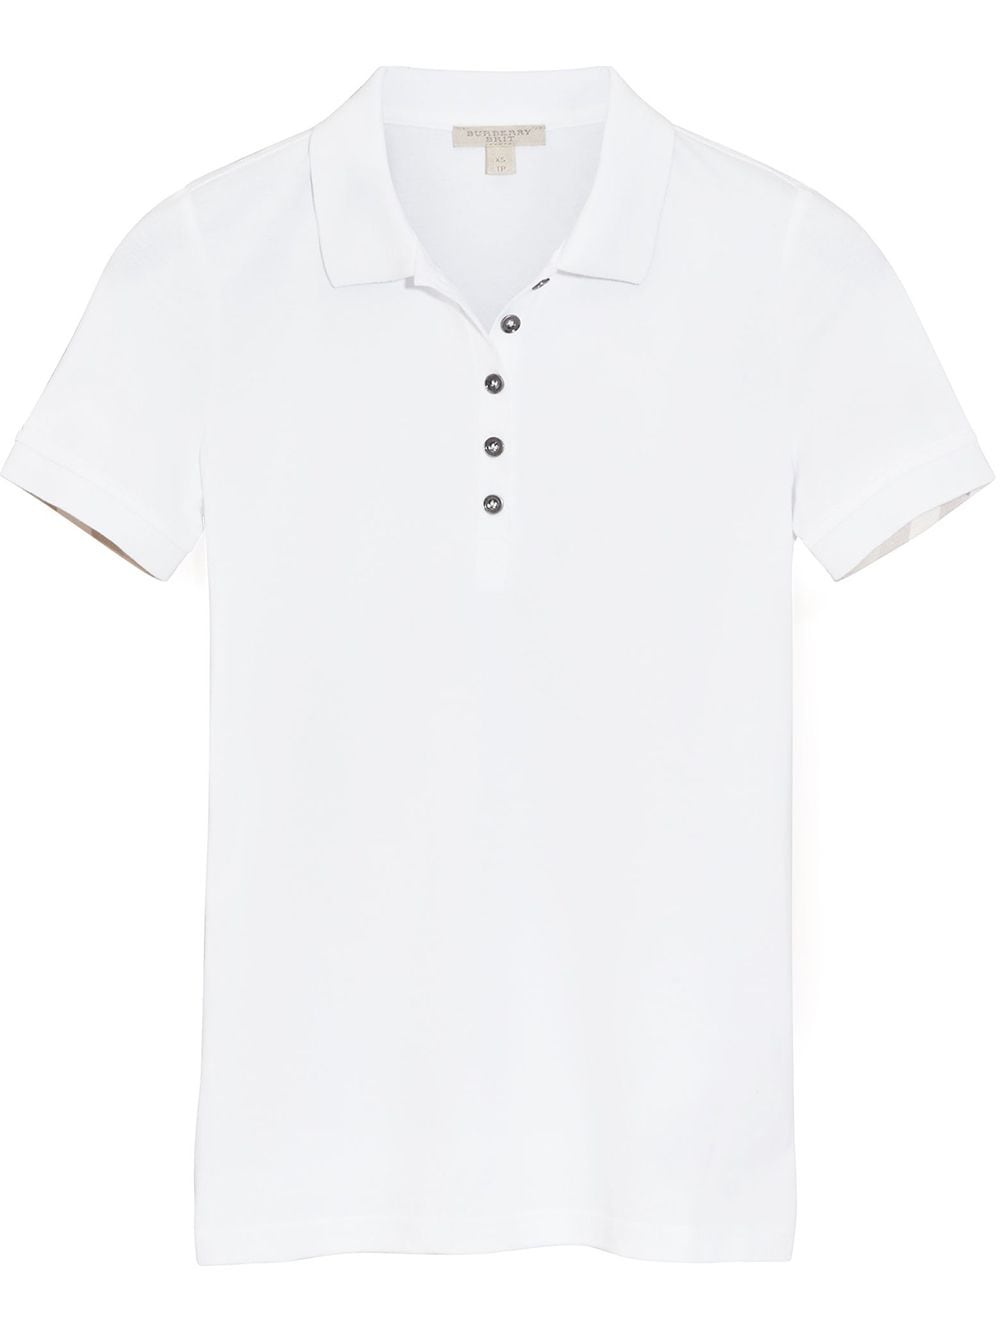 Burberry Check Trim Stretch Cotton Piqué Polo Shirt - Farfetch